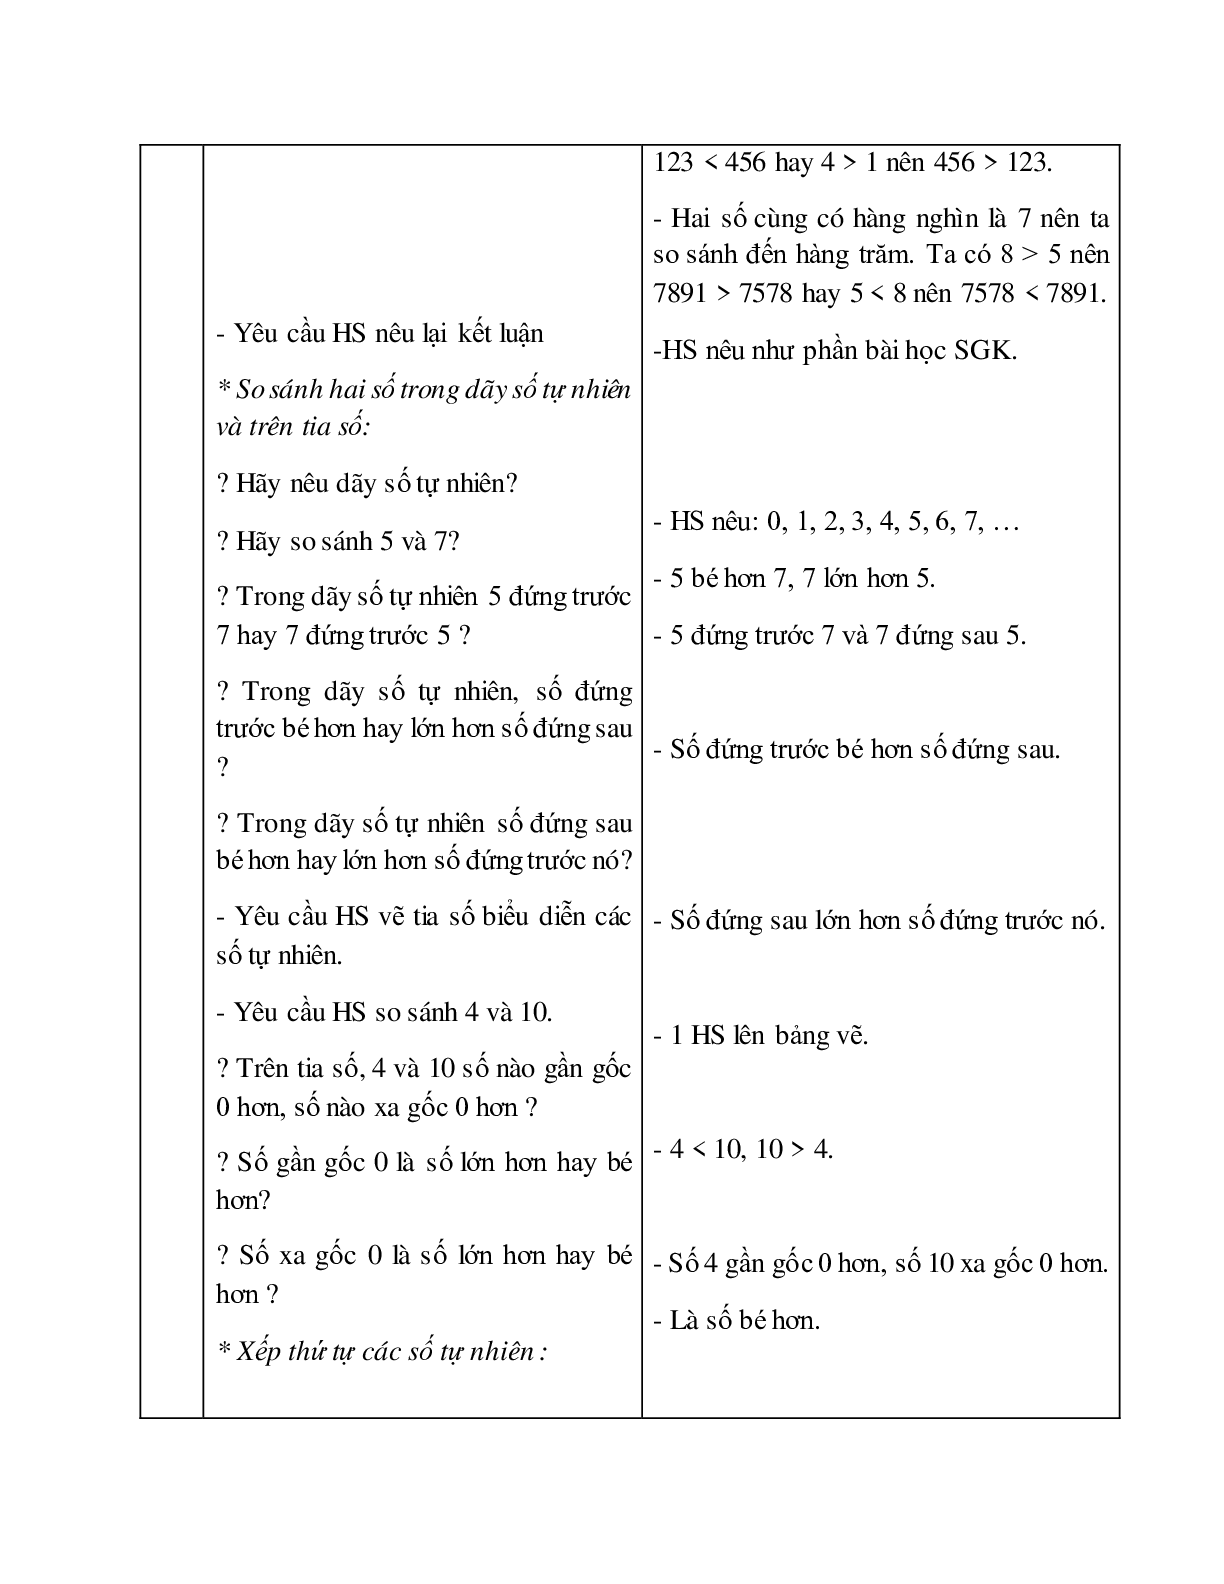 Giáo án Toán lớp 4 bài So sánh và xếp thứ tự các số tự nhiên mới nhất (trang 3)